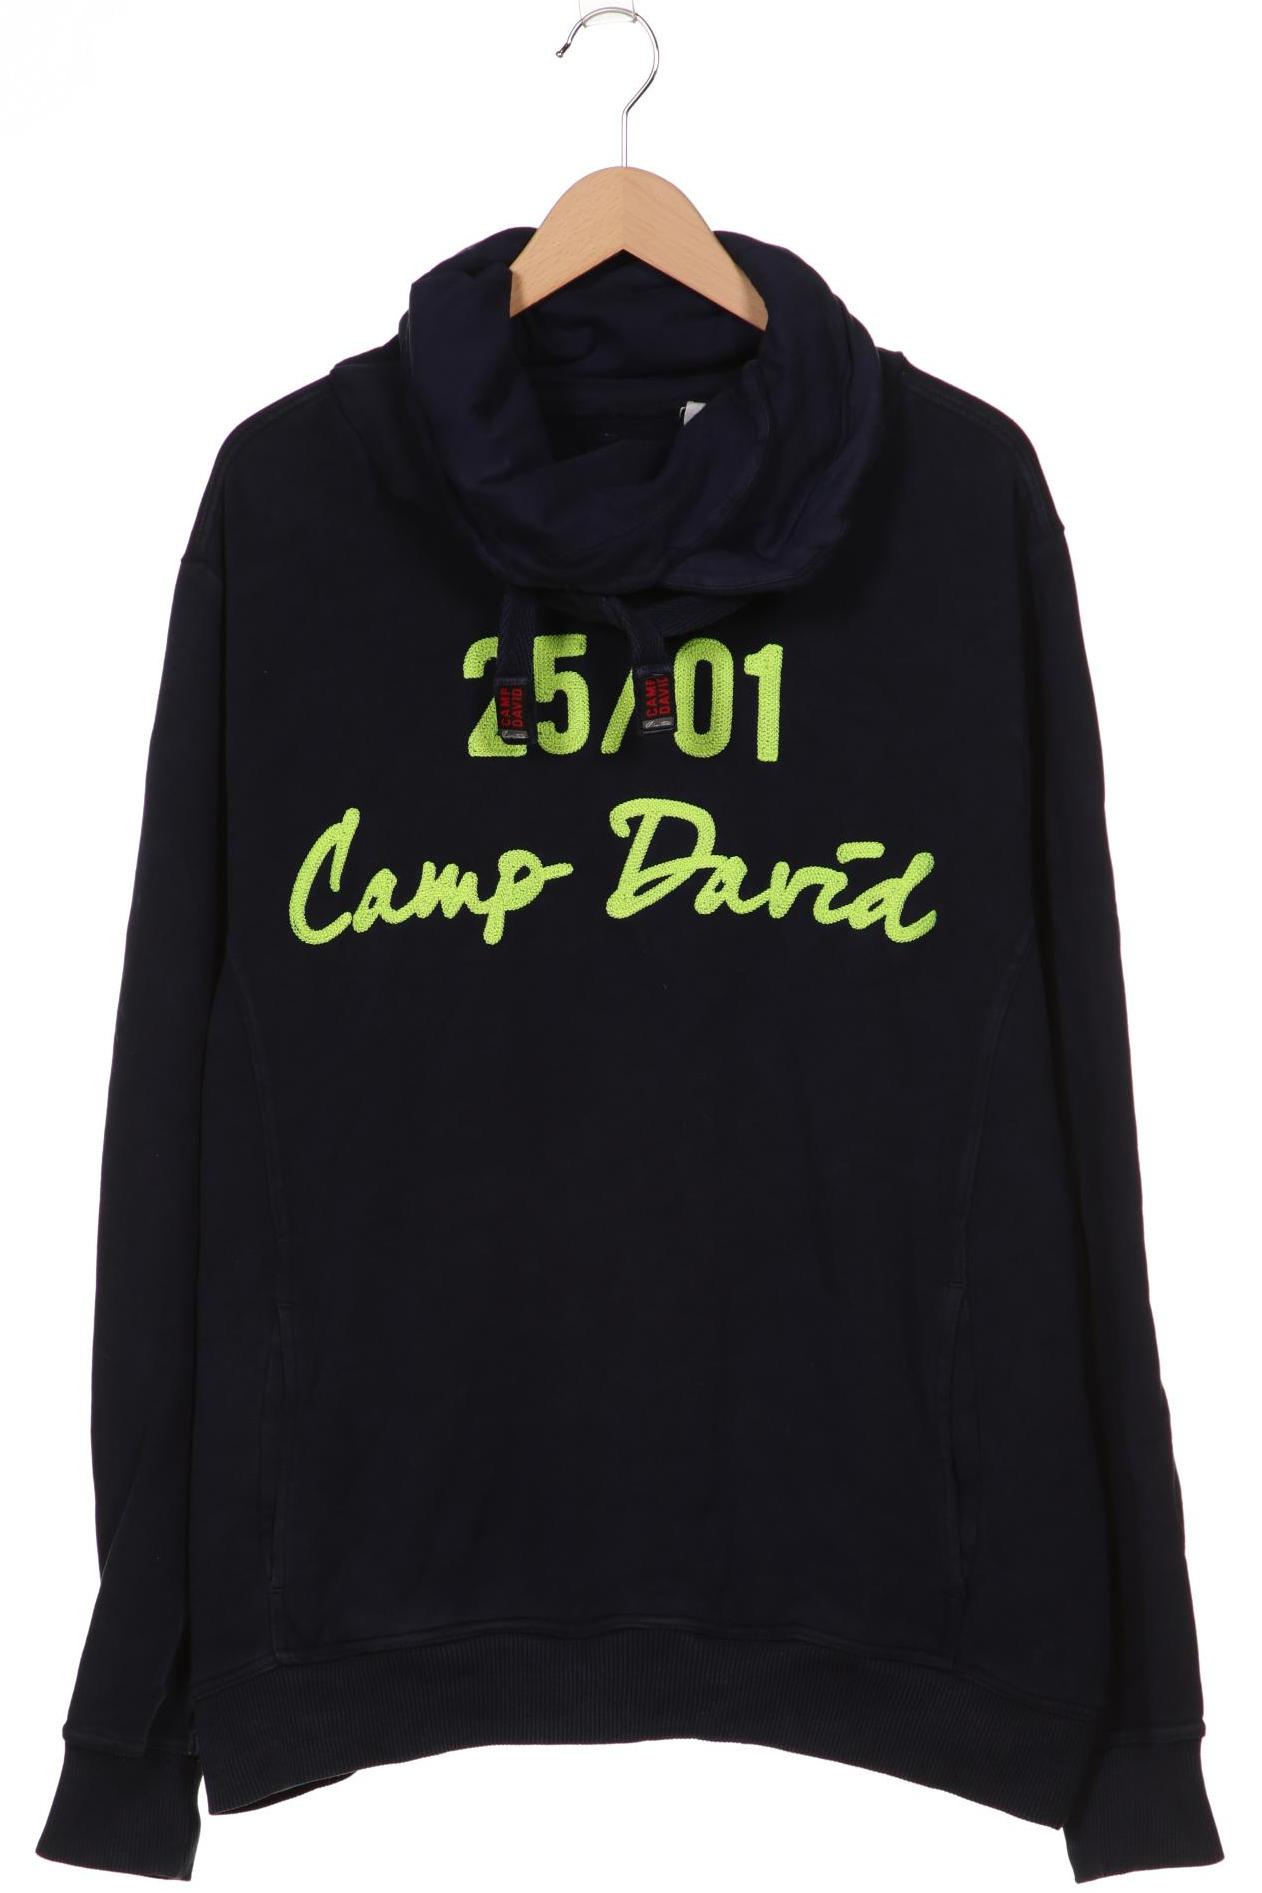 Camp David Herren Sweatshirt, marineblau von camp david